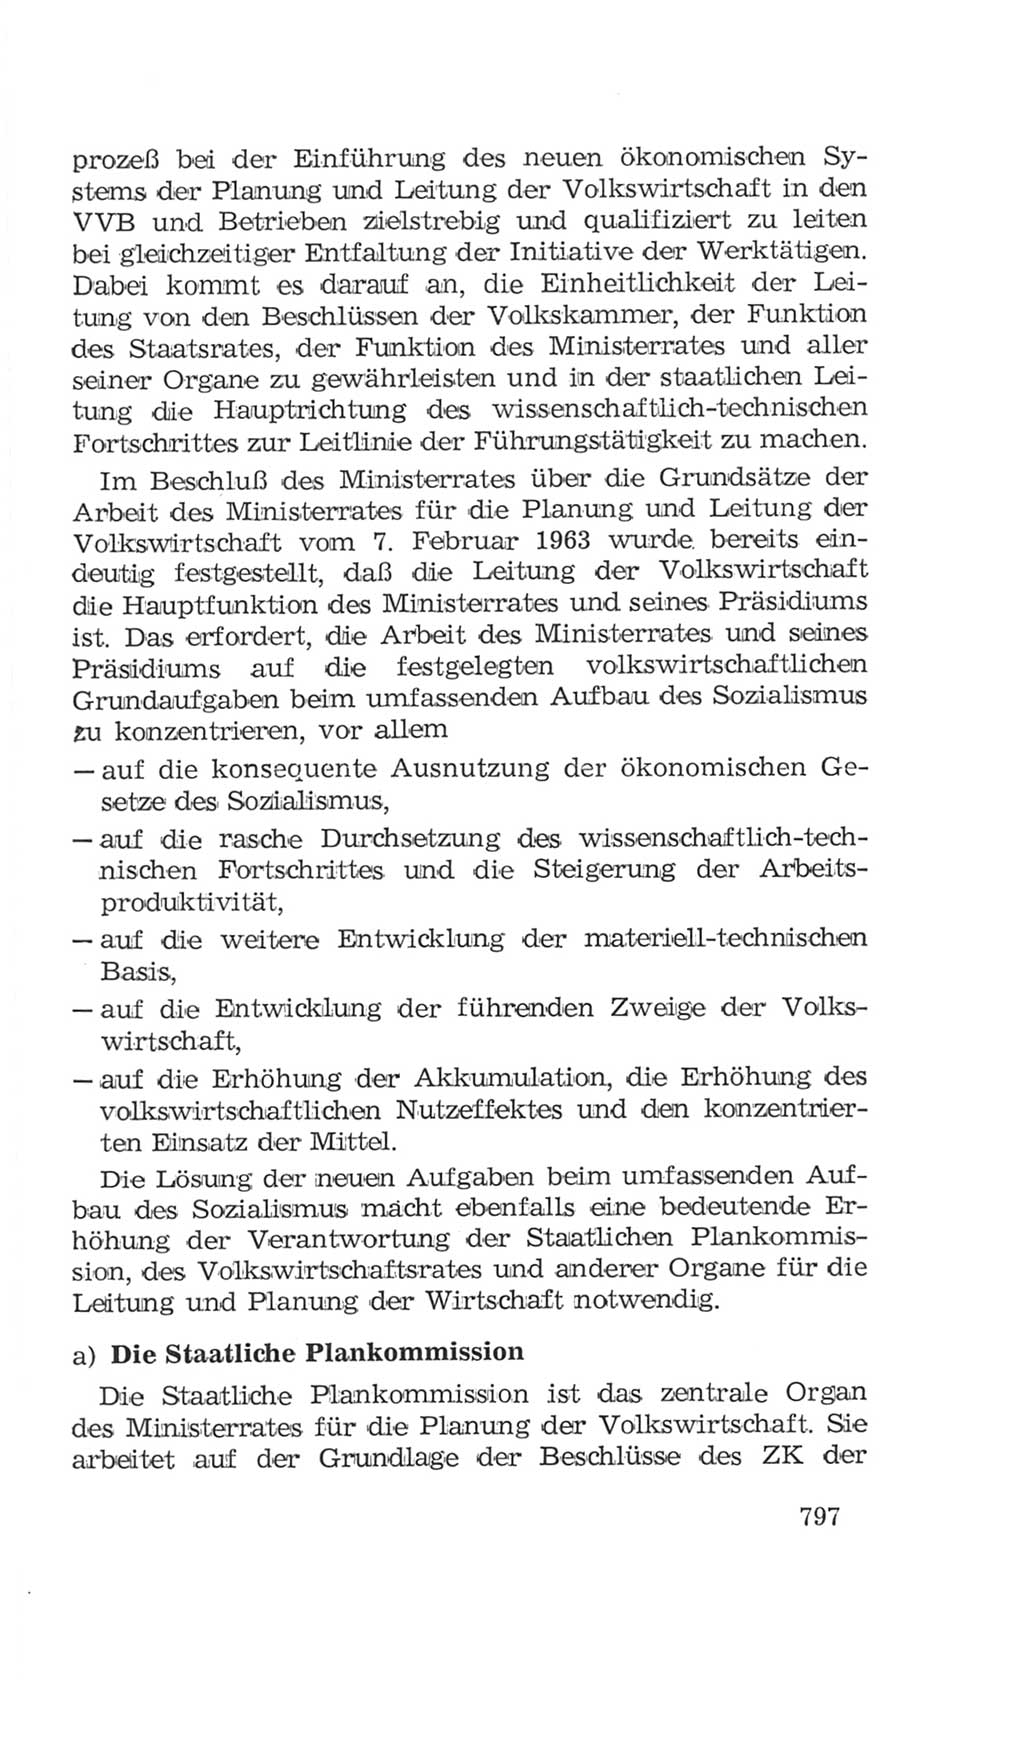 Volkskammer (VK) der Deutschen Demokratischen Republik (DDR), 4. Wahlperiode 1963-1967, Seite 797 (VK. DDR 4. WP. 1963-1967, S. 797)